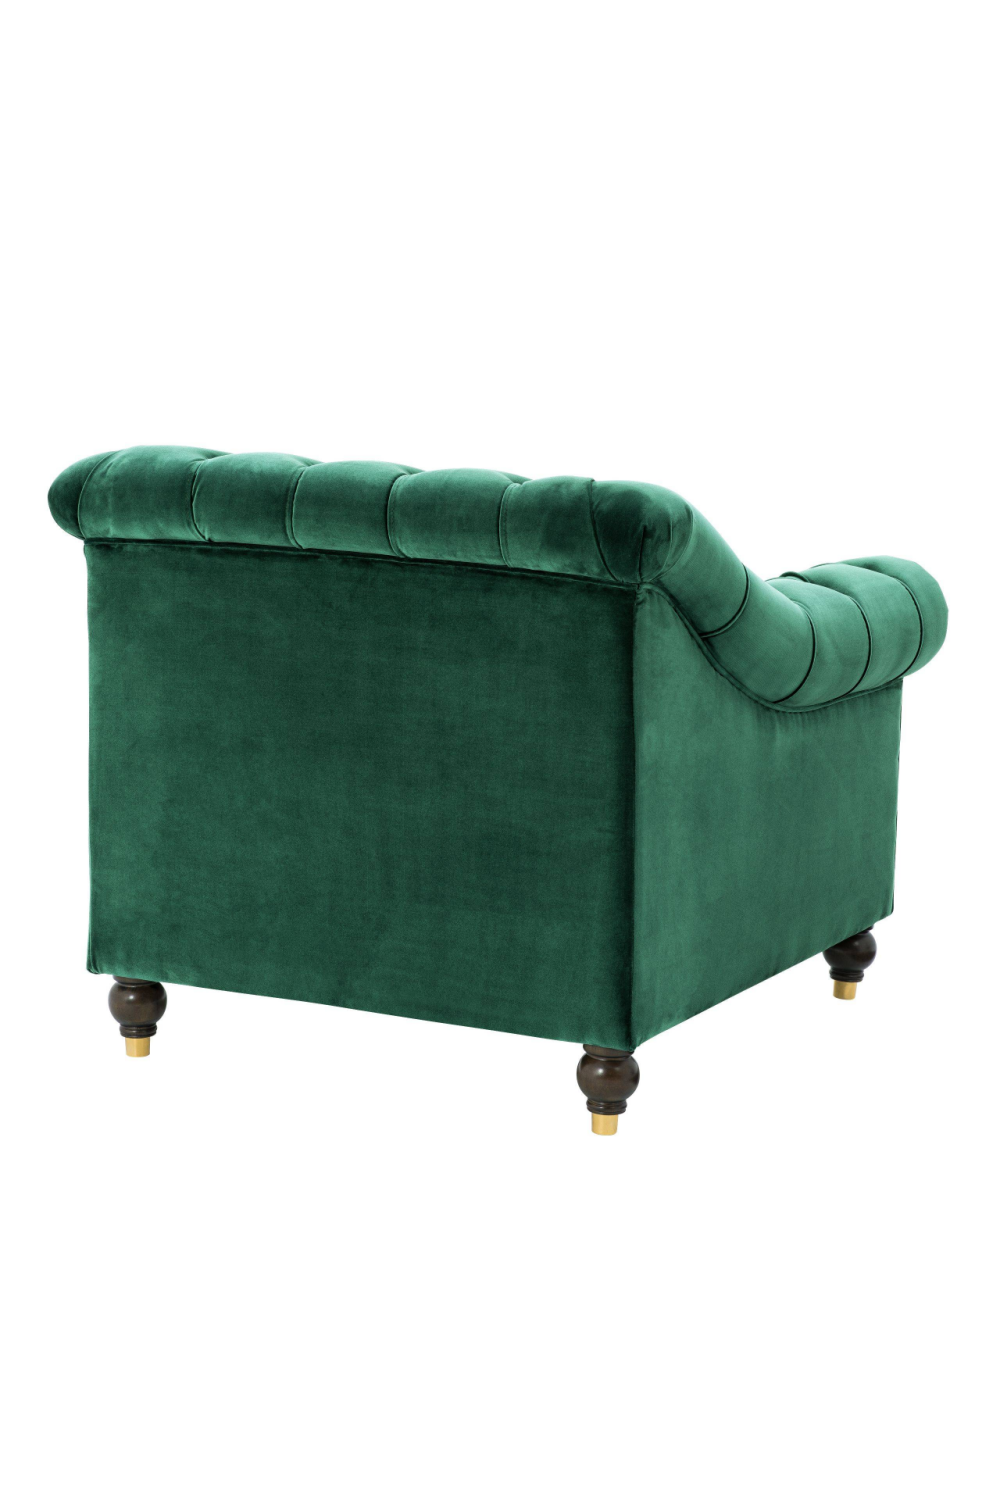 Tufted Green Accent Chair | Eichholtz Brian | Oroa.com